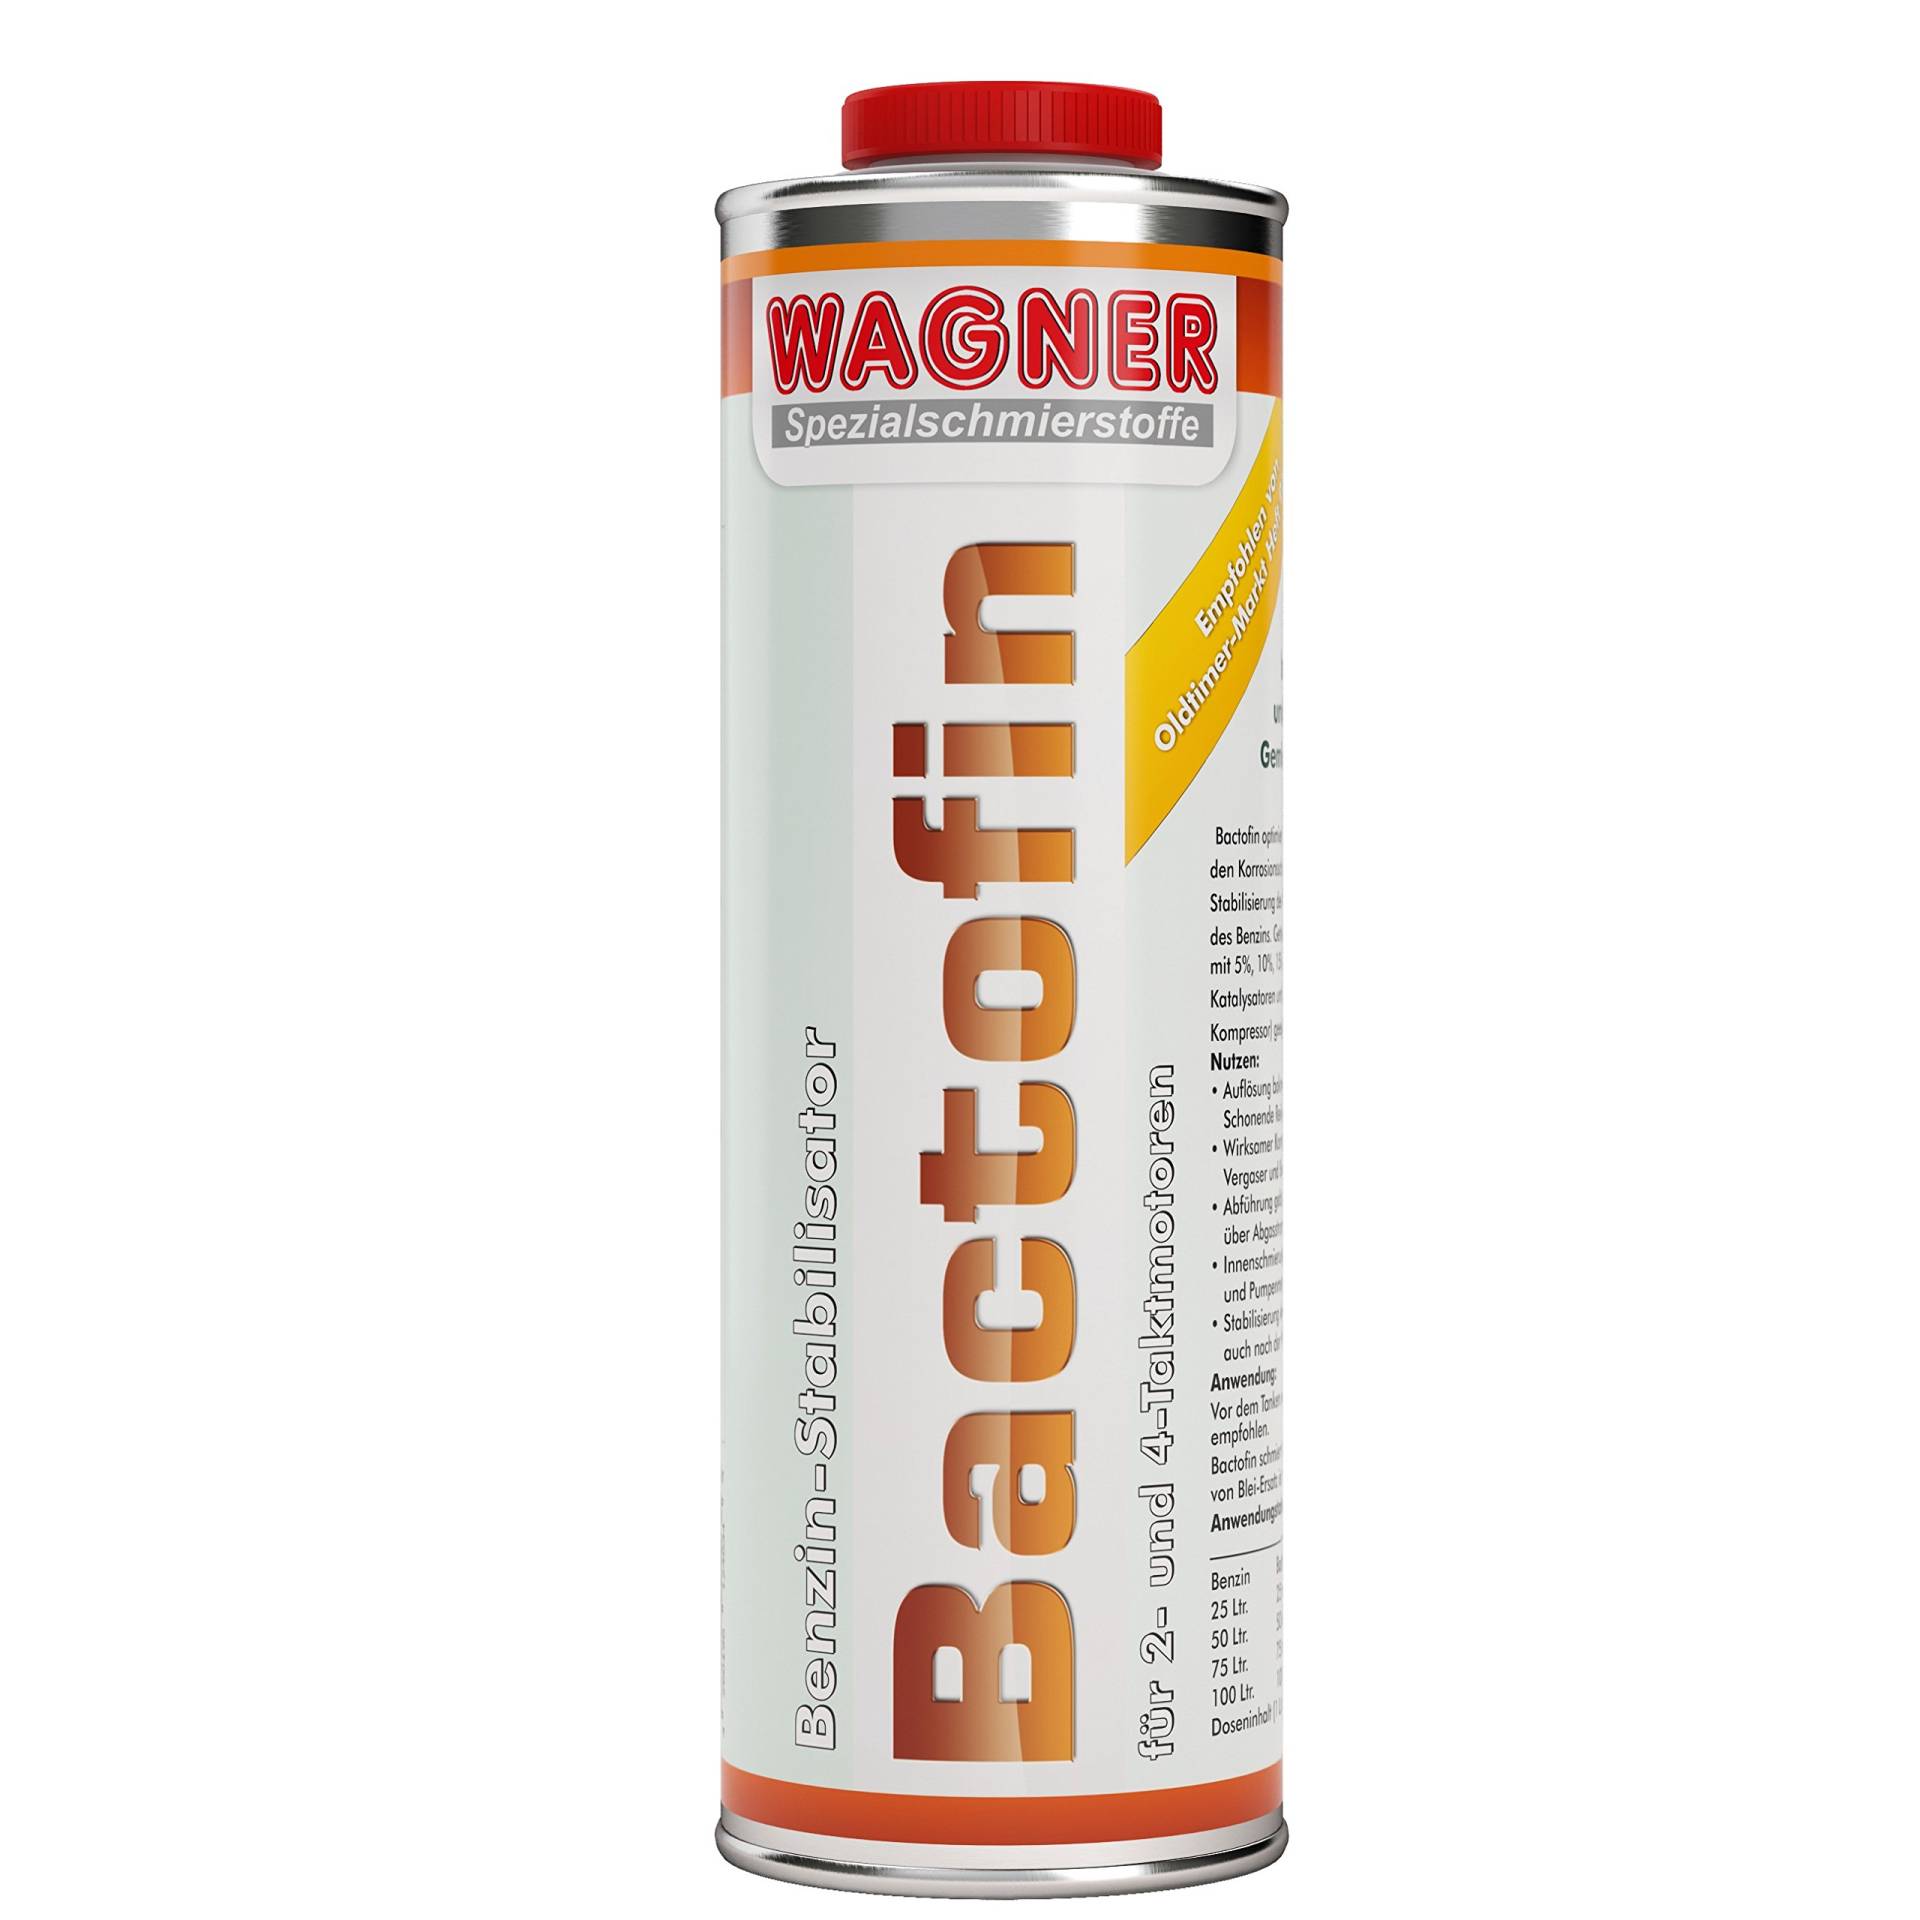 WAGNER Bactofin Benzinstabilisator - 040001 - 1 Liter von WAGNER Spezialschmierstoffe GmbH & Co. KG